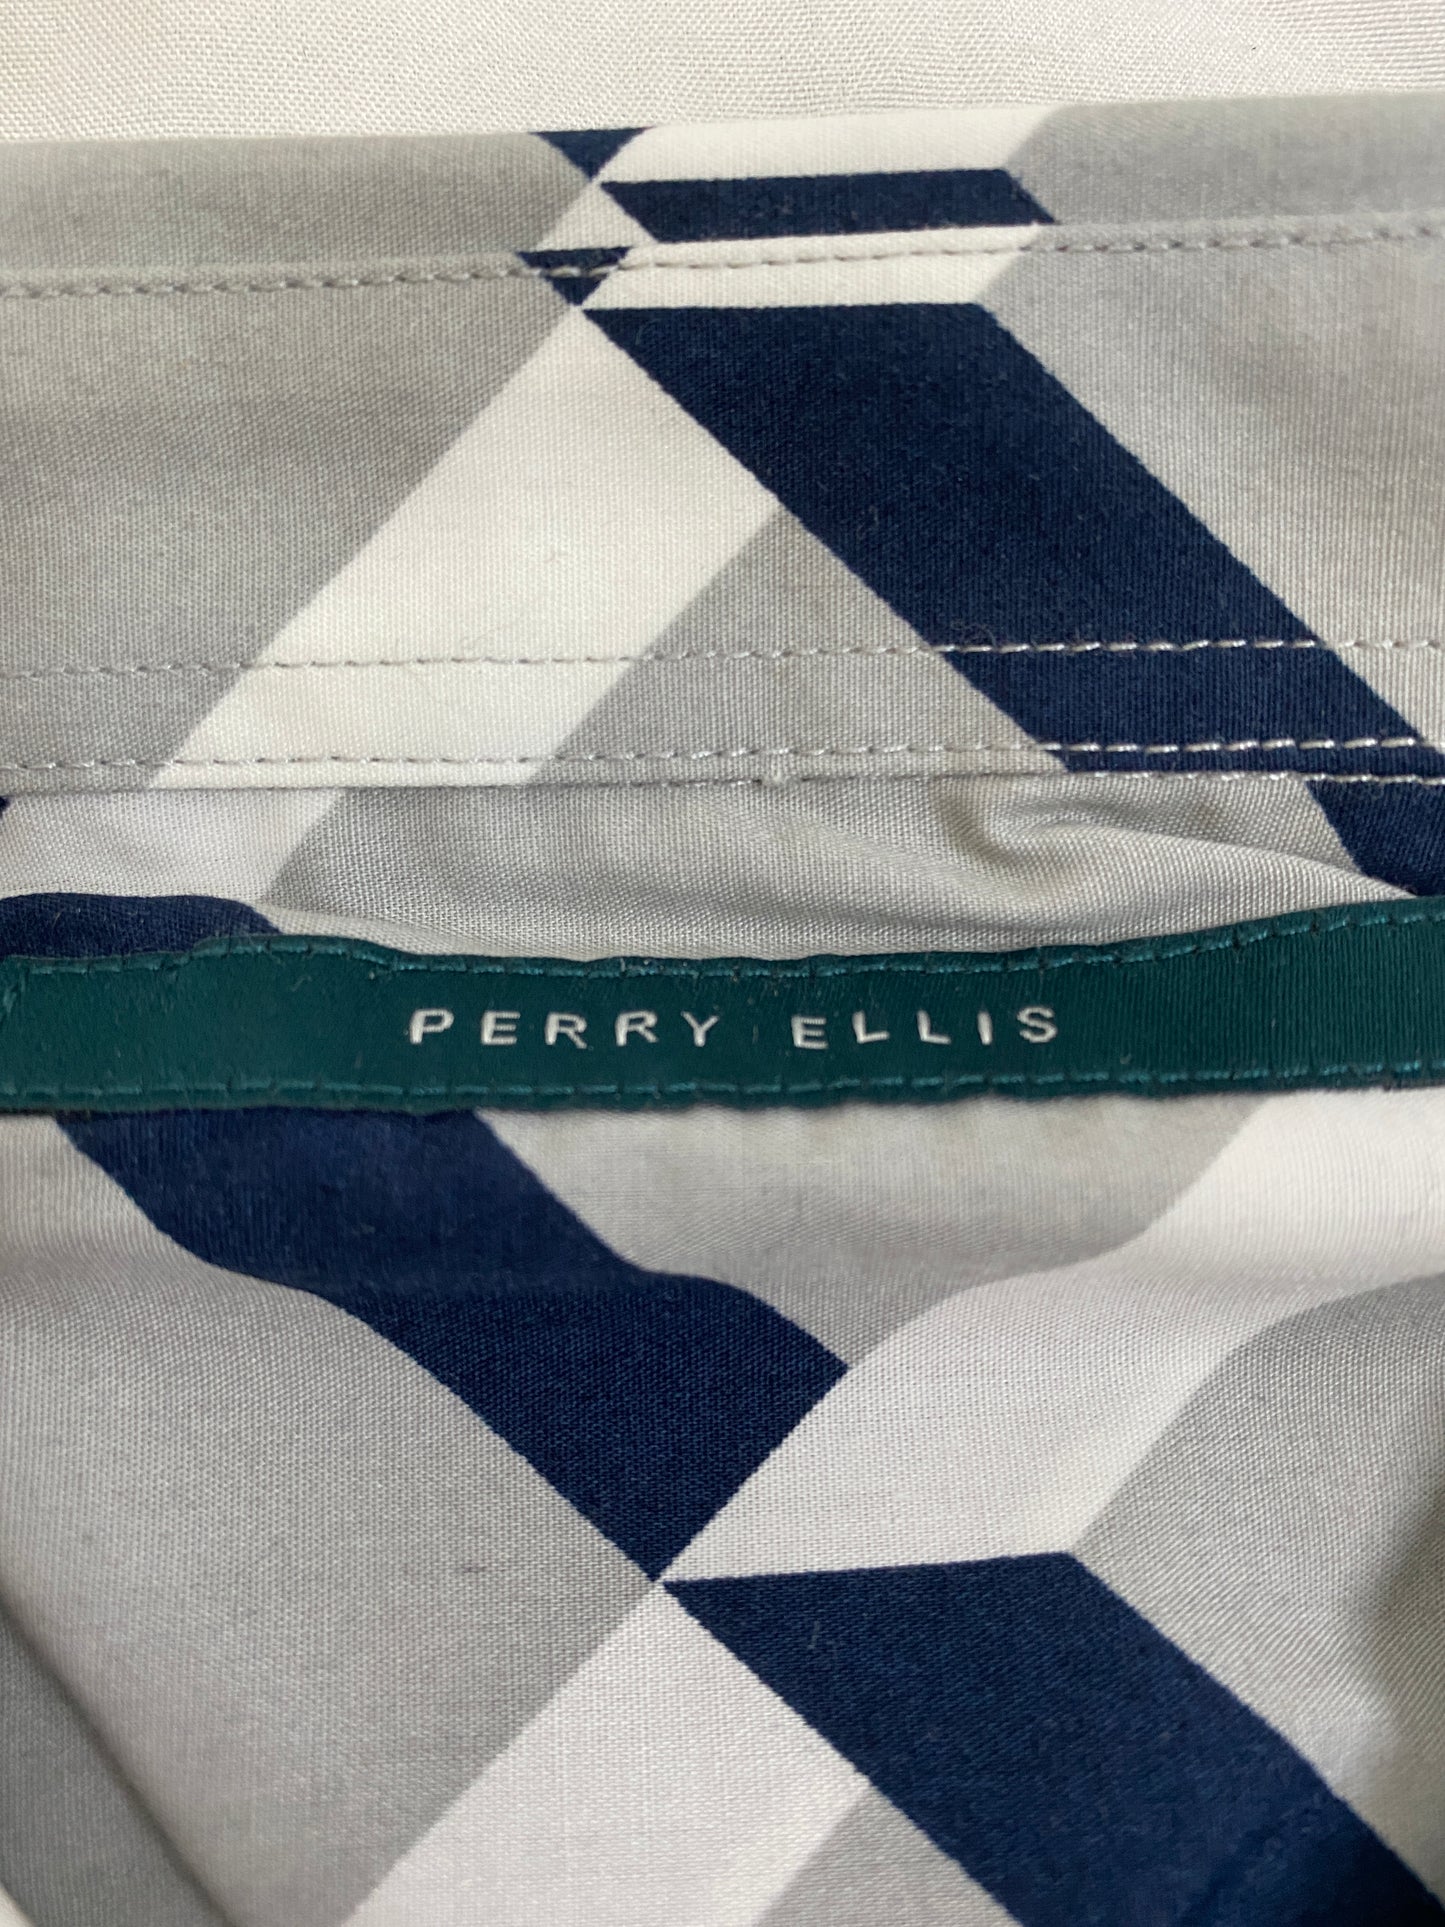 Perry Ellis 60's Shirt Men's Navy White Grey Size XXL NWT SKU 000183-2